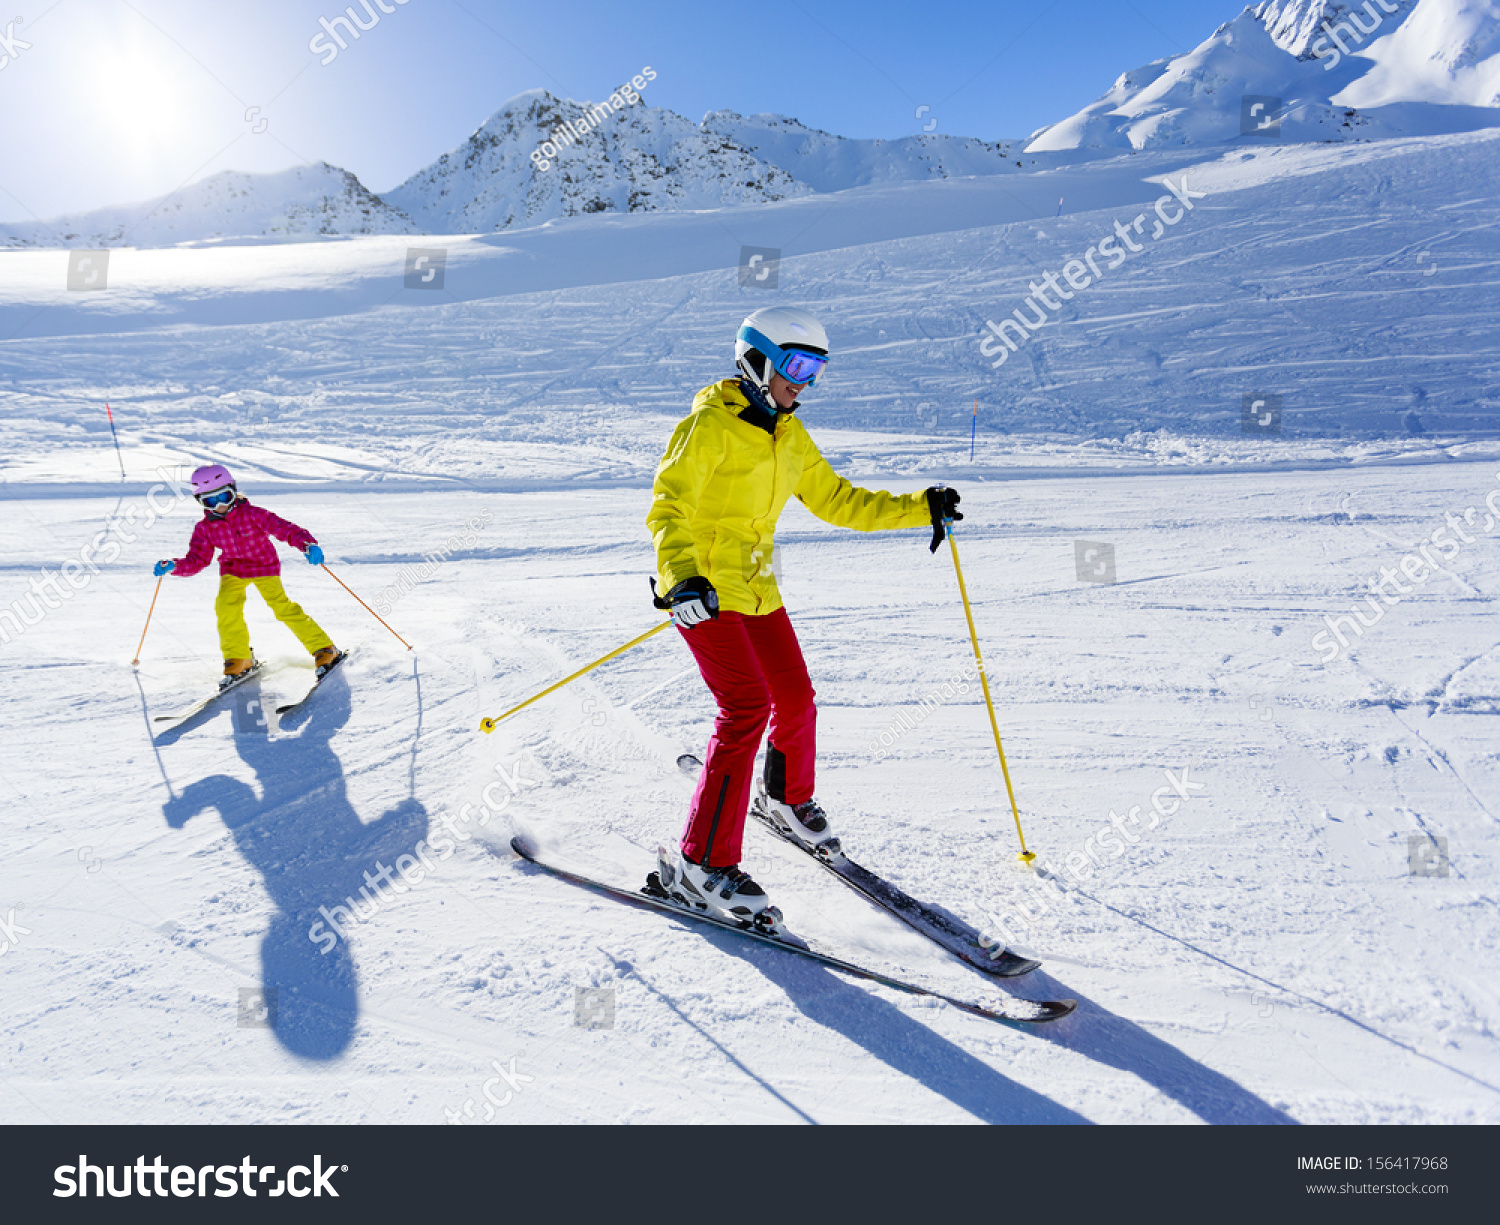 Skiing, winter, ski lesson - skiers on ski run #156417968